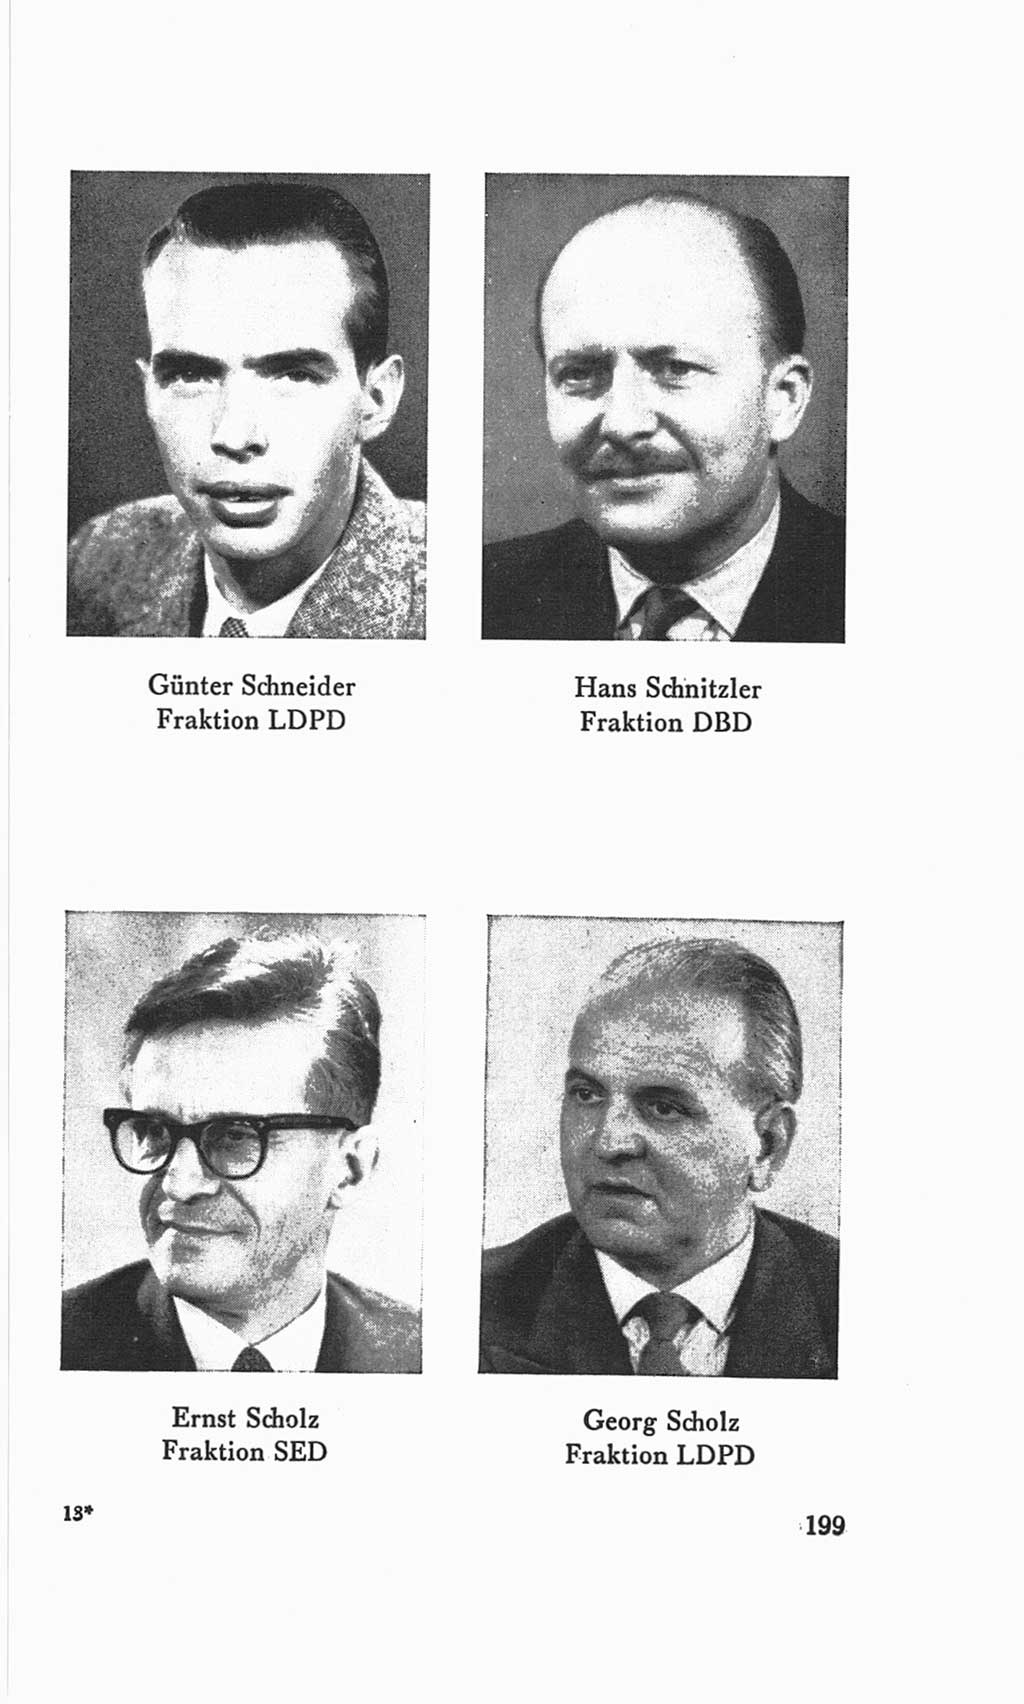 Handbuch der Volkskammer (VK) der Deutschen Demokratischen Republik (DDR), 3. Wahlperiode 1958-1963, Seite 199 (Hdb. VK. DDR 3. WP. 1958-1963, S. 199)